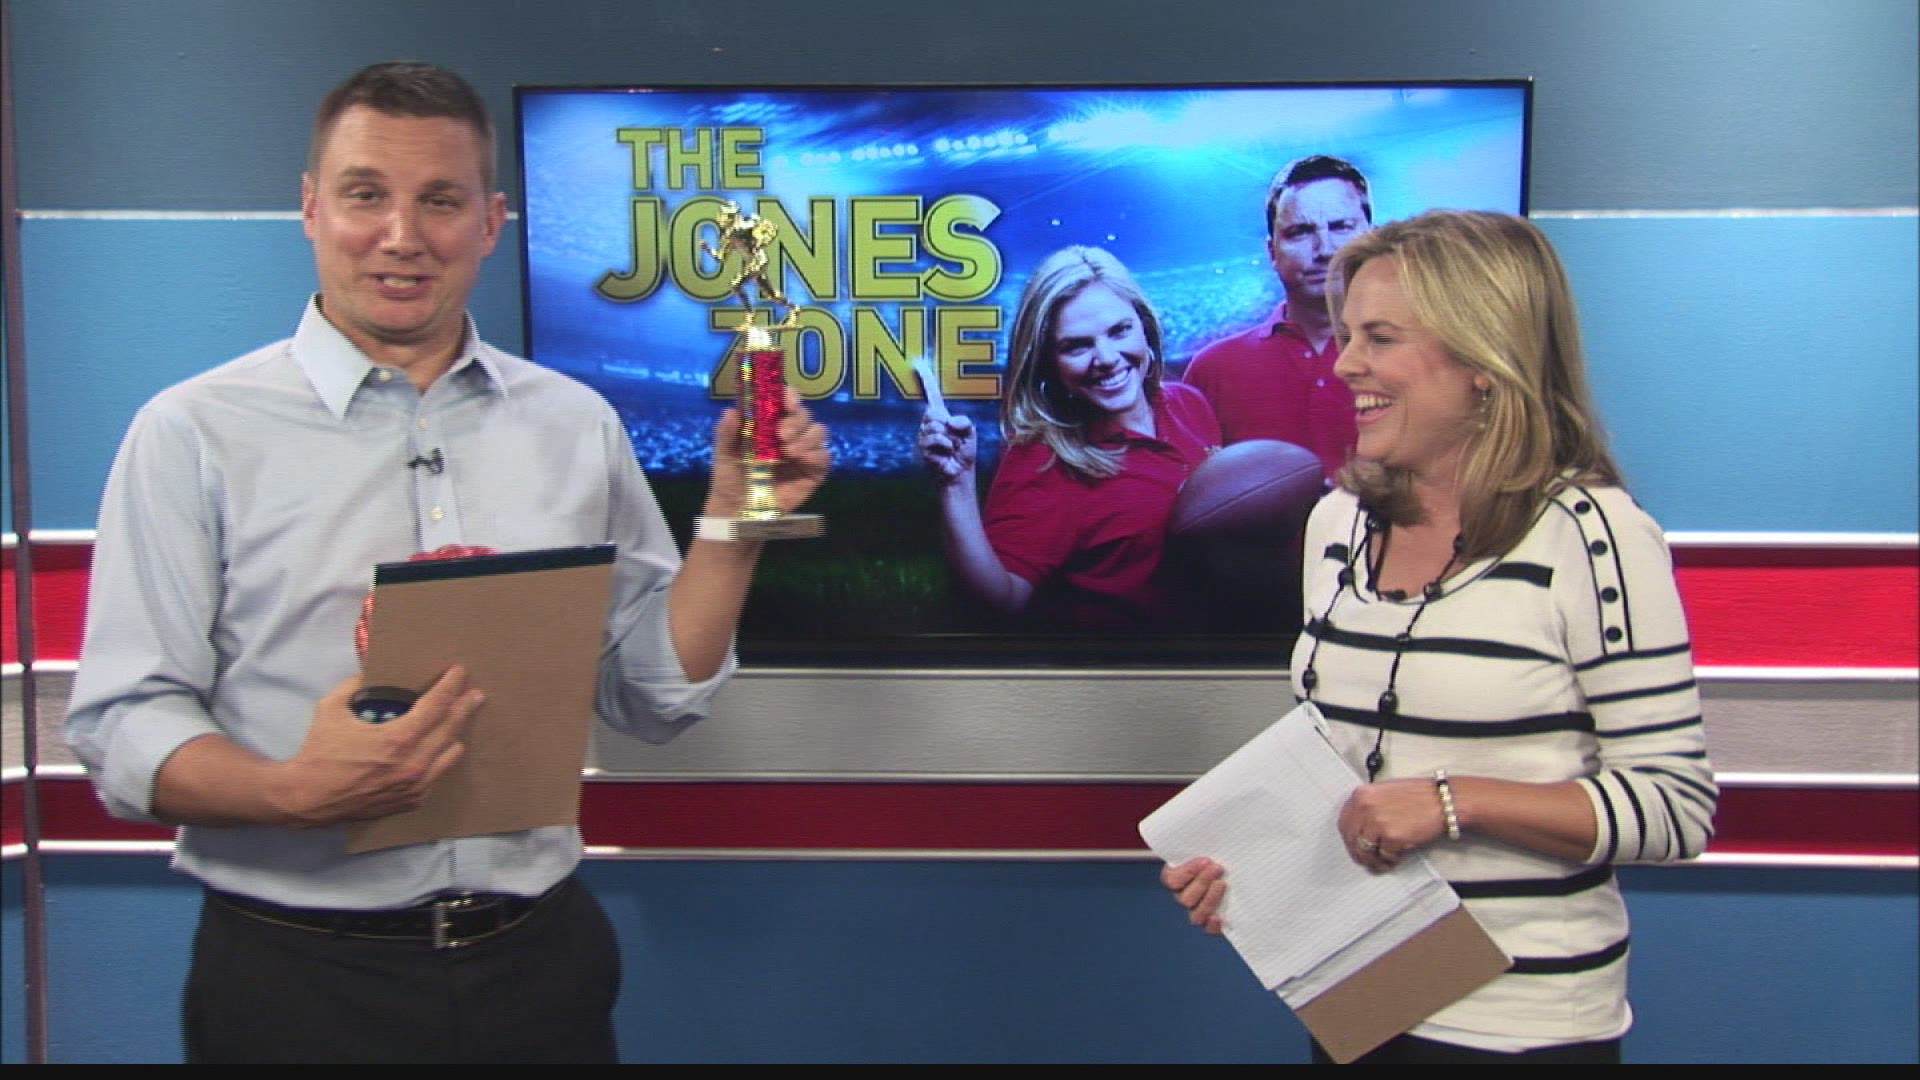 The Jones Zone, Week 10